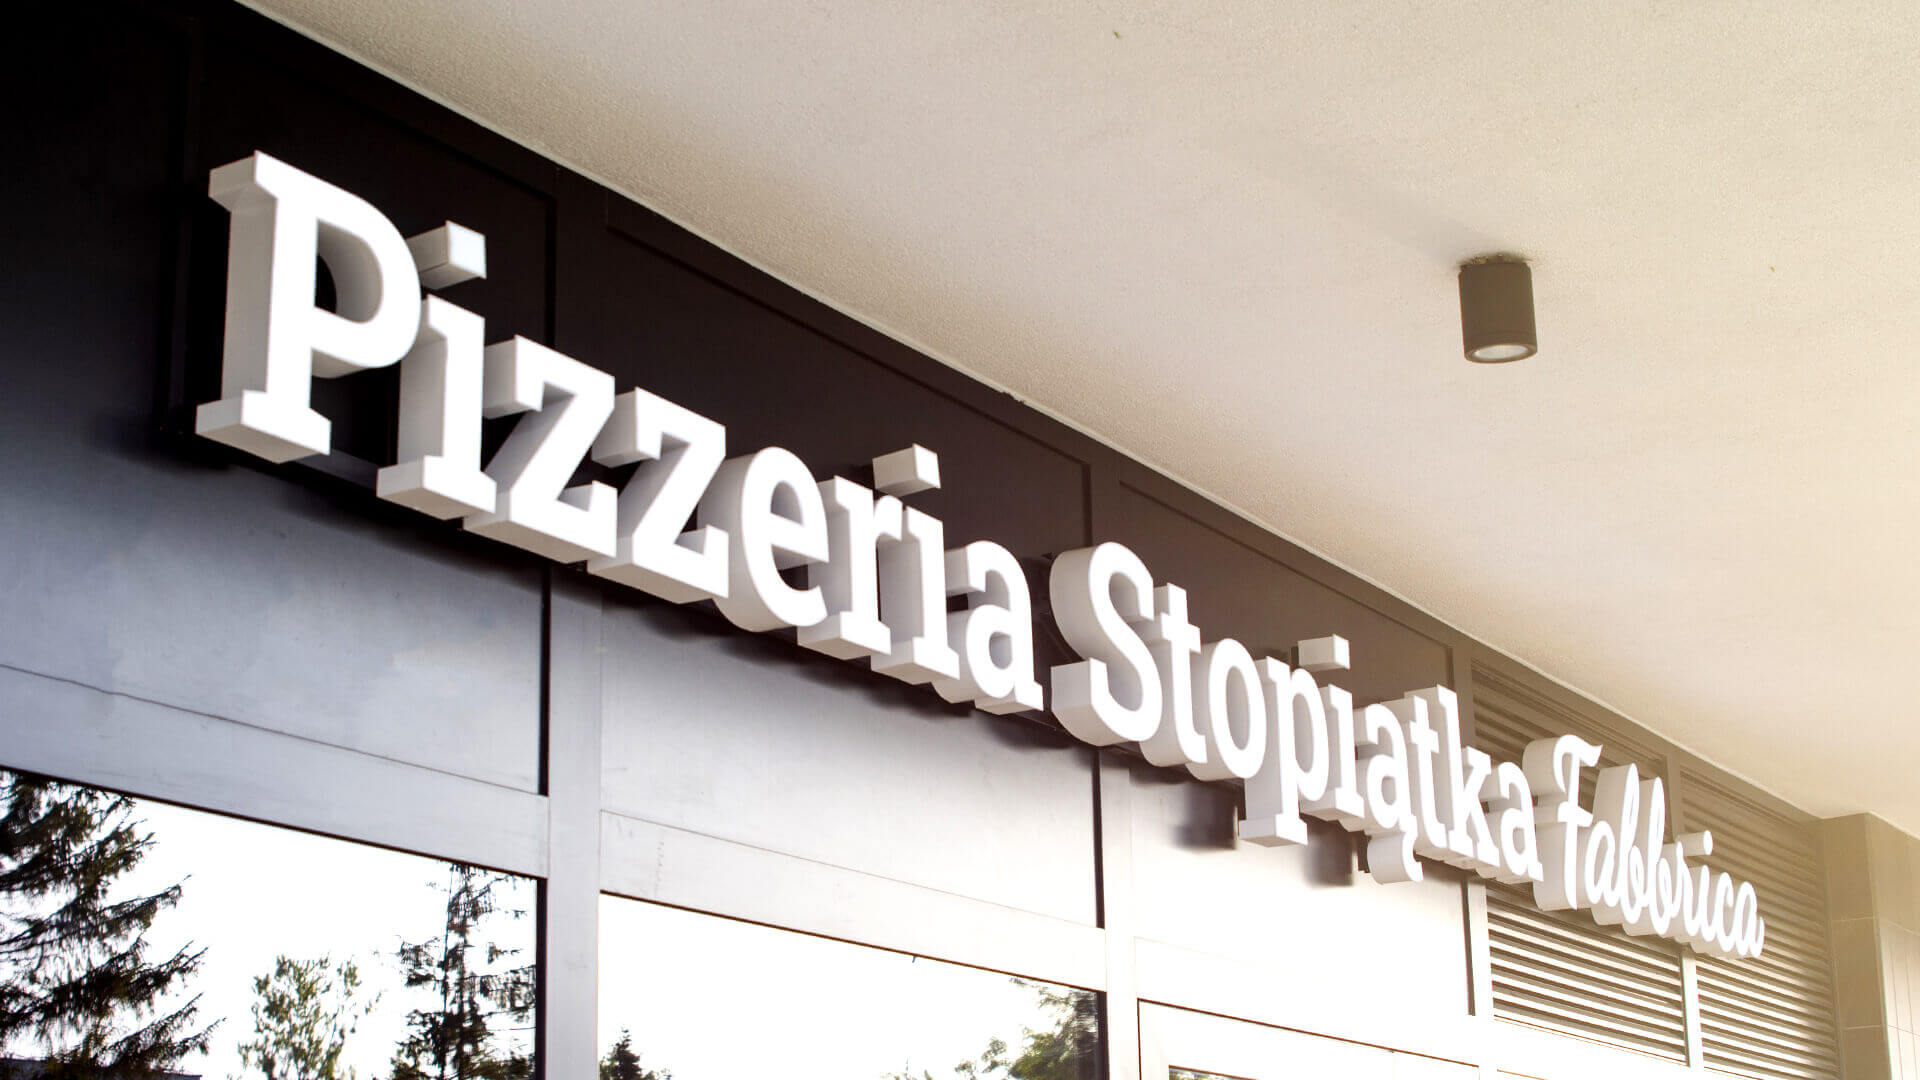 105 pizza pizzera pizzería restaurante - pizzeria-105 letras-espacio-iluminadas-led-lettering-sobre-la-entrada-restaurante- letras-blancas-en-la-pared- letras-en-la-base- letras-en-la-altura-gdansk-morena- (19) 